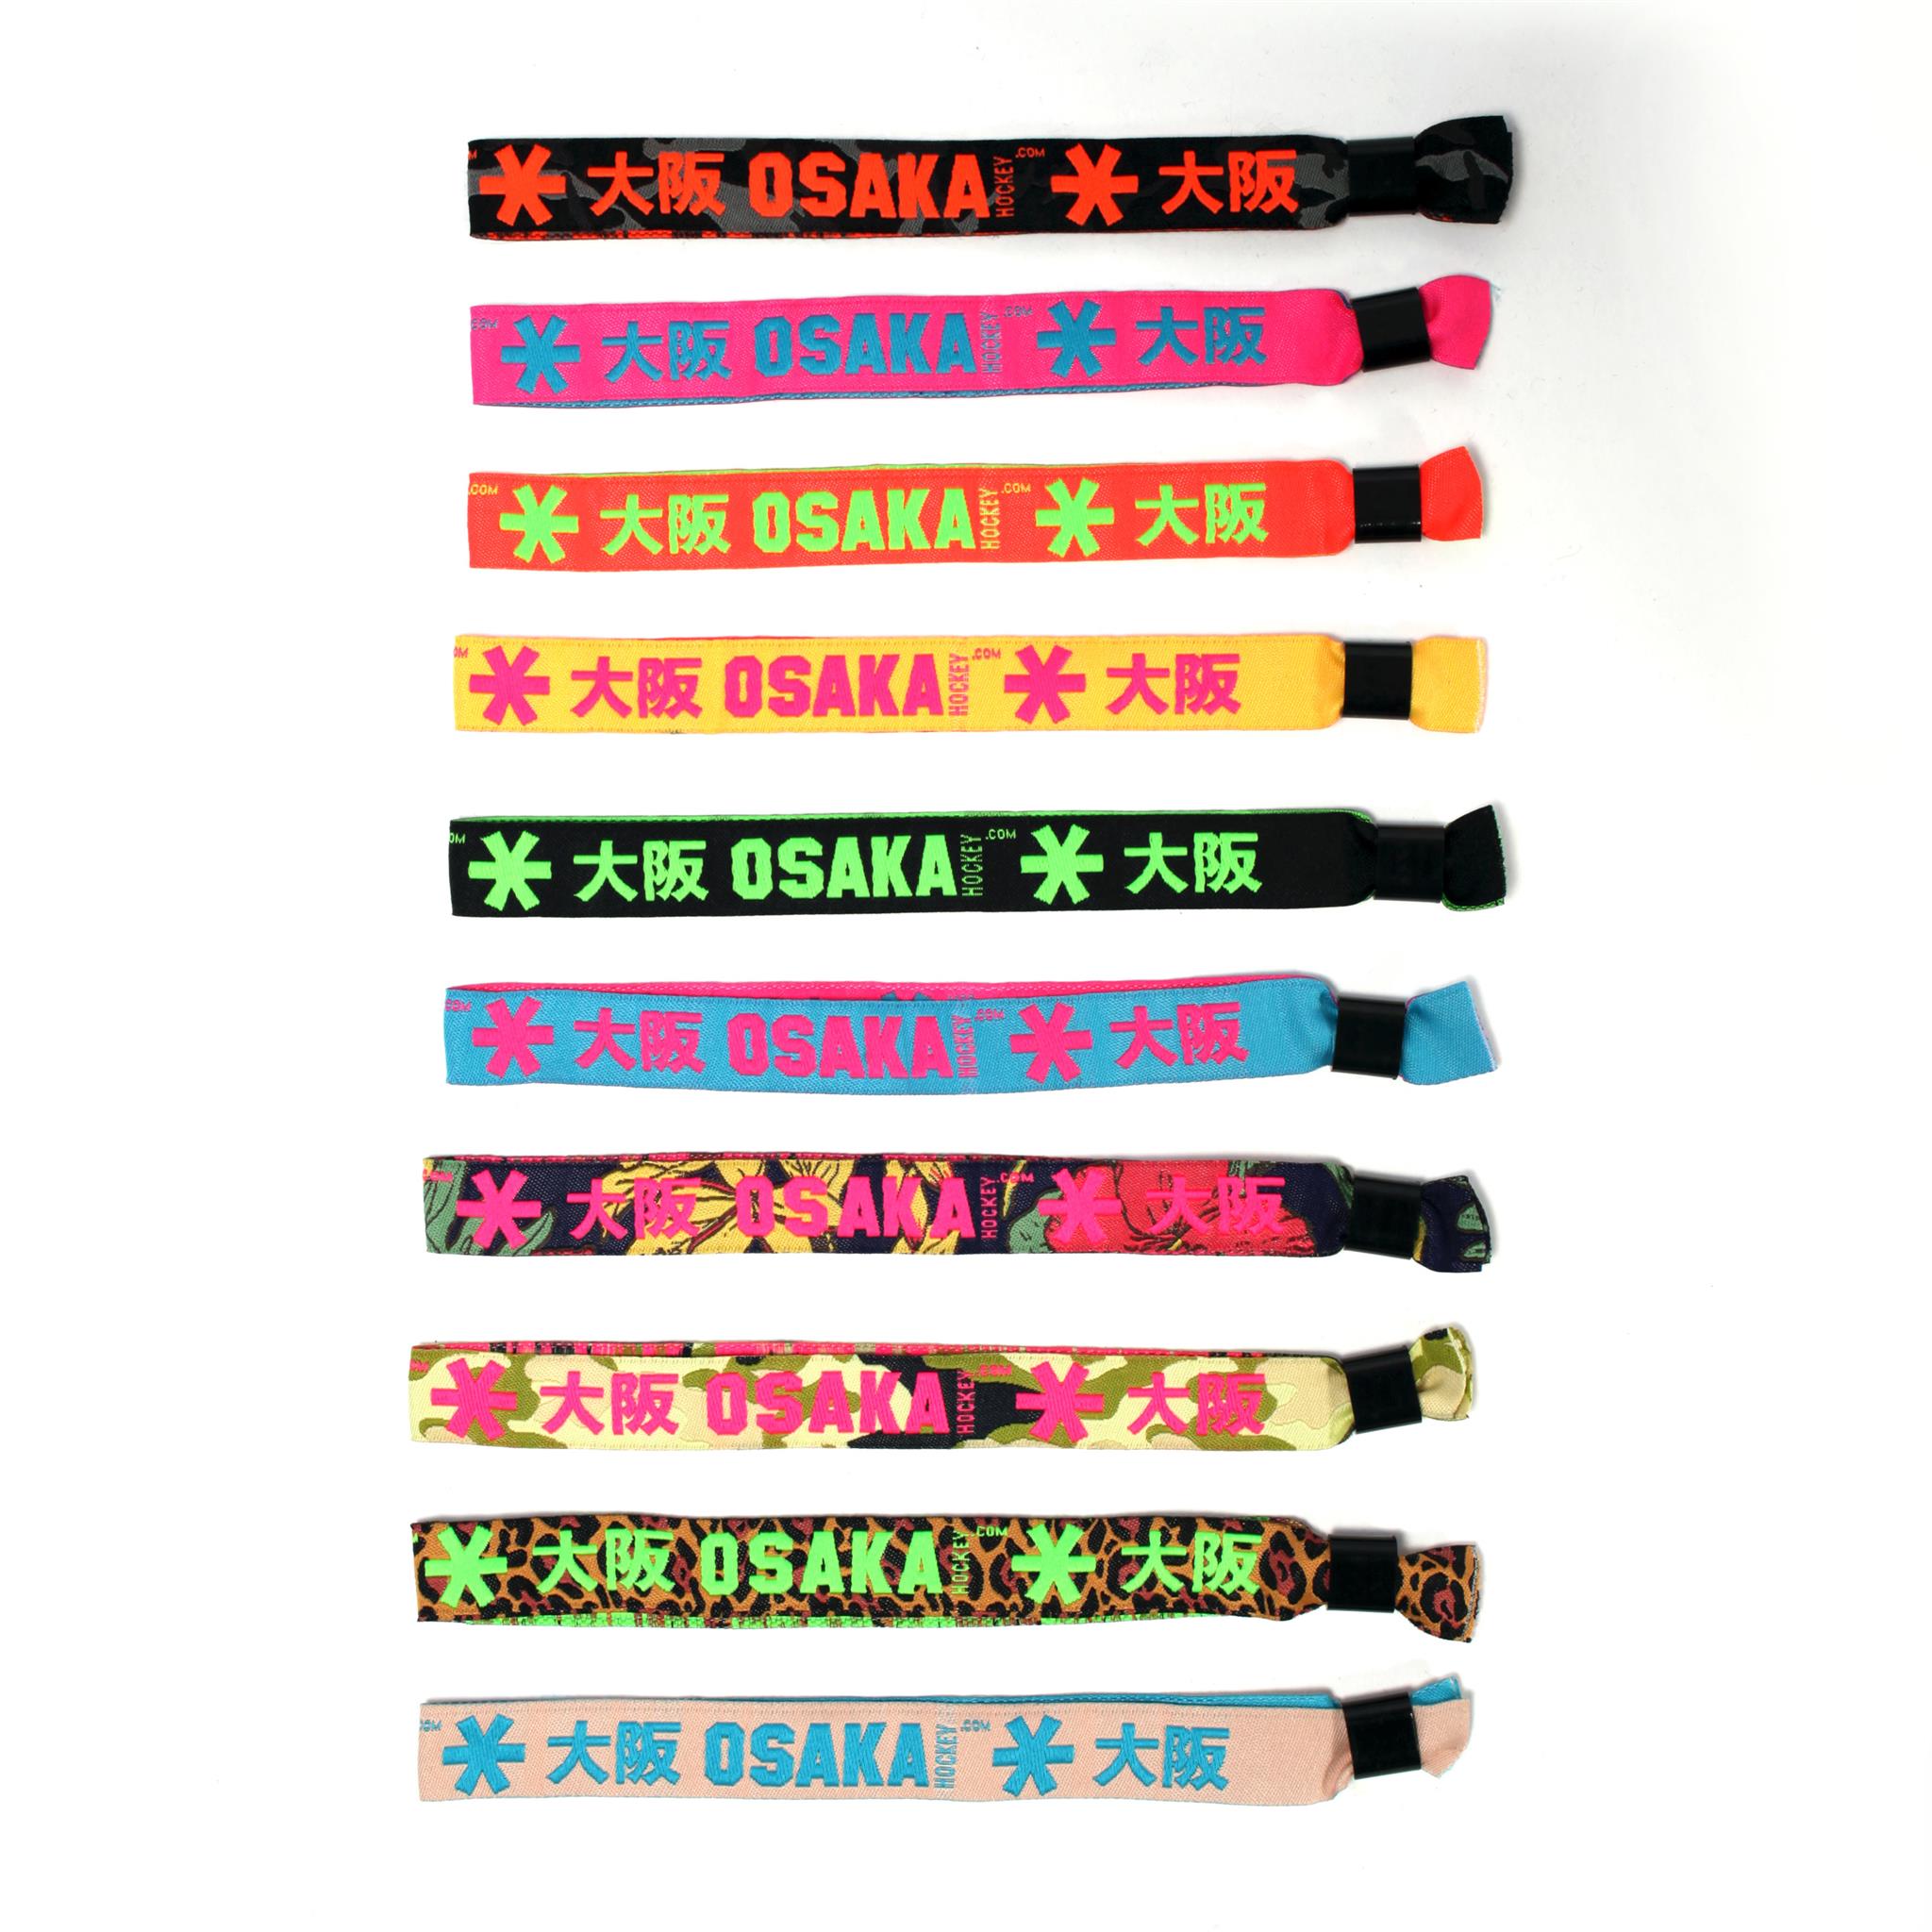 Sluit een verzekering af strelen Oogverblindend Osaka armbandjes bracelets bij 10 bandjes 11de GRATIS - De Hockeyzaak